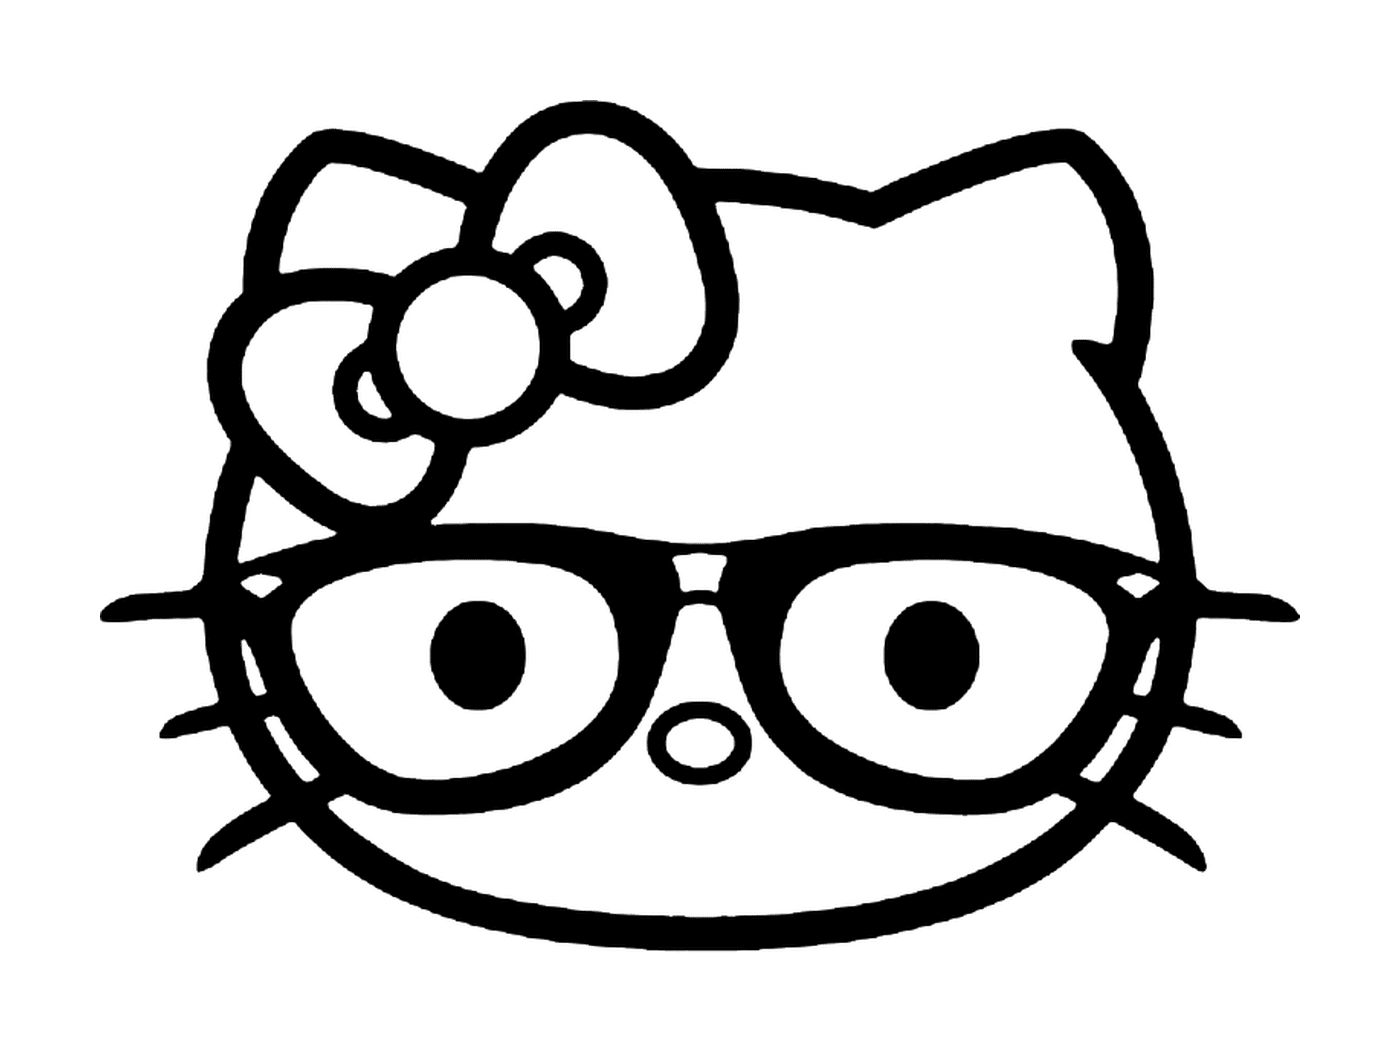  A Hello Kitty face 